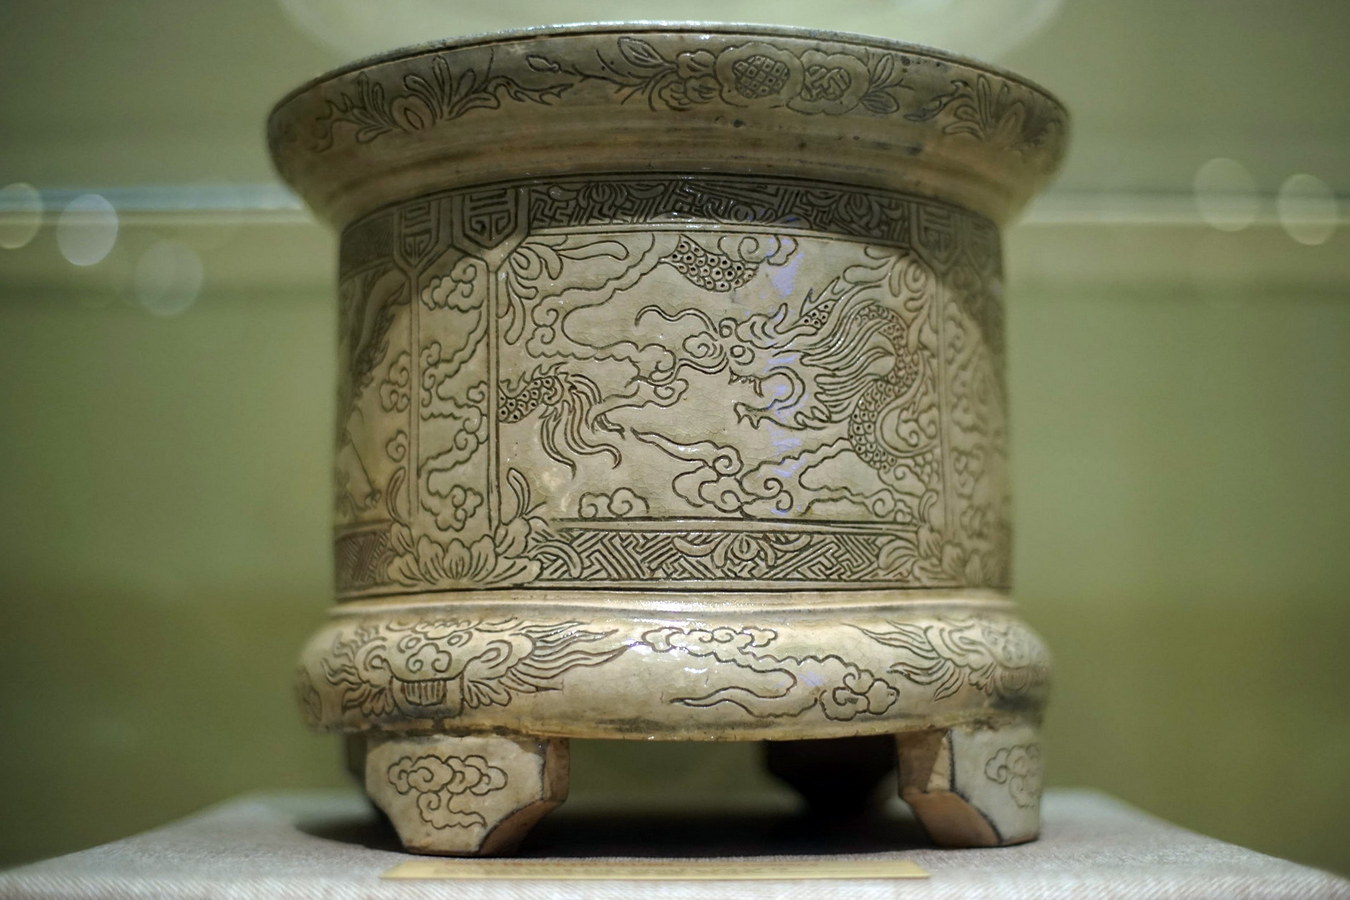 Chùm ảnh: Vẻ đẹp của hình tượng rồng trên gốm cổ Việt Nam